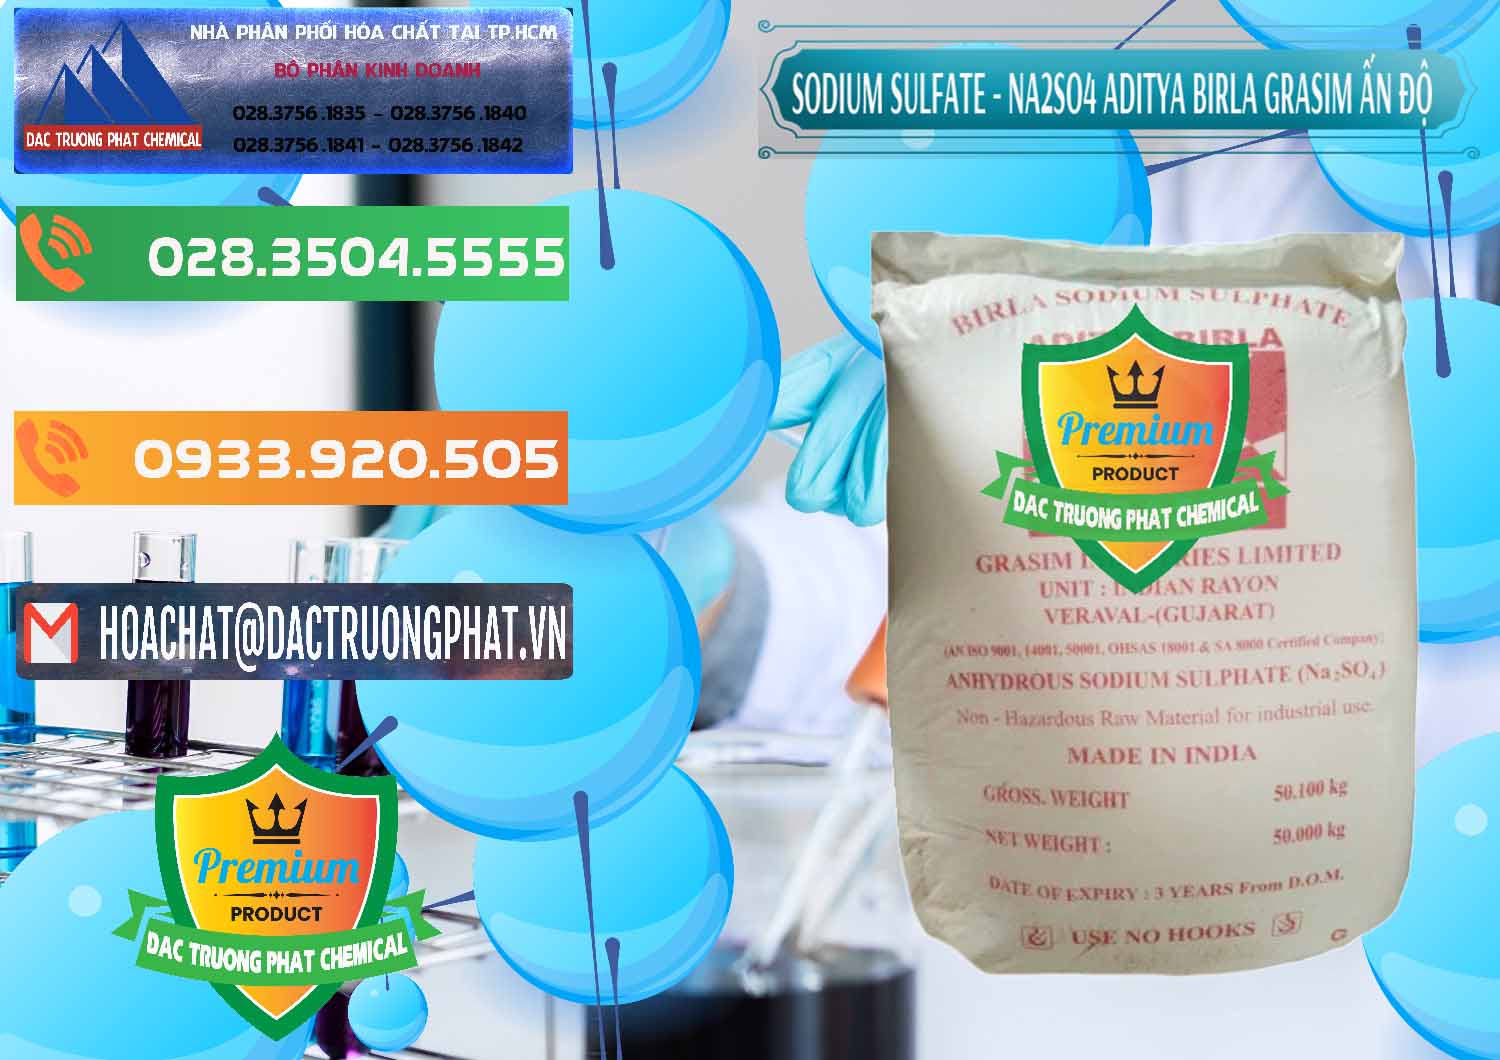 Đơn vị chuyên bán và cung cấp Sodium Sulphate - Muối Sunfat Na2SO4 Grasim Ấn Độ India - 0356 - Công ty phân phối và nhập khẩu hóa chất tại TP.HCM - hoachatxulynuoc.com.vn